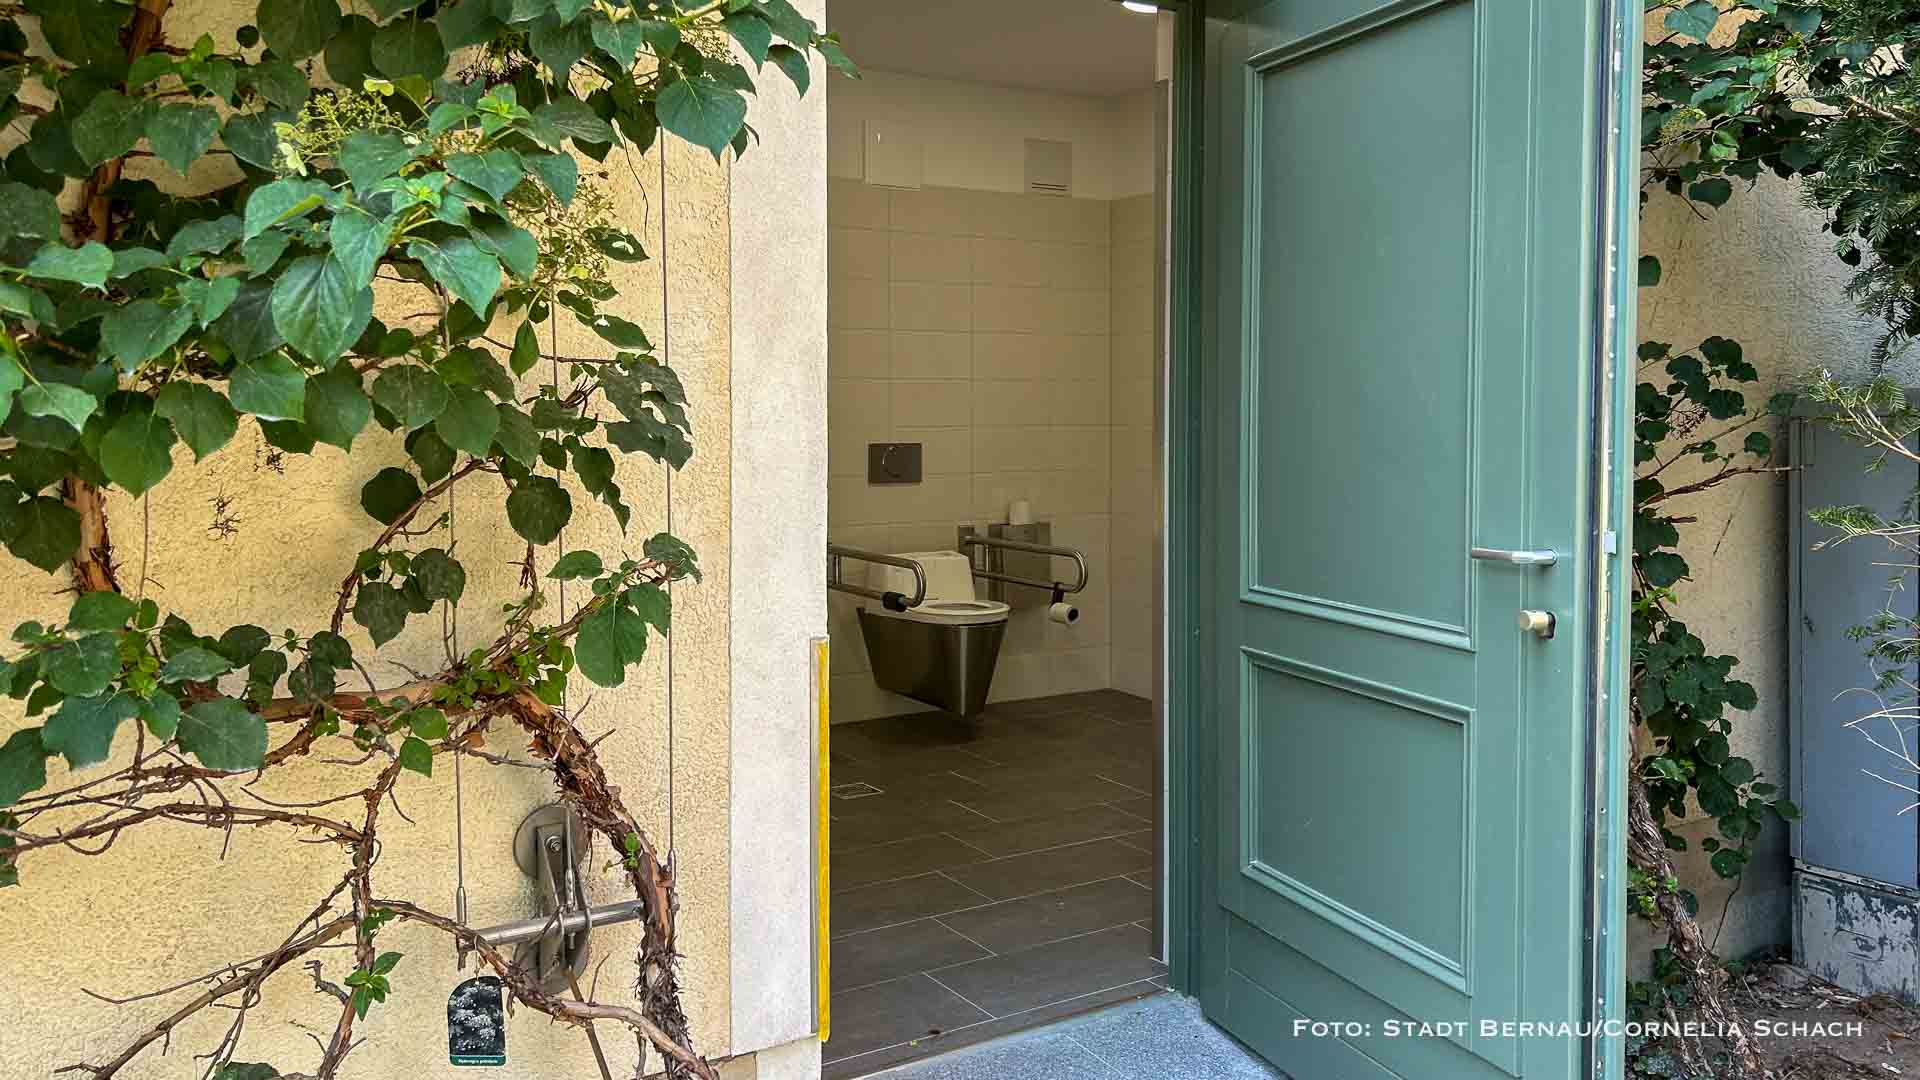 Öffentliches WC im Stadtpark Bernau in Betrieb genommen